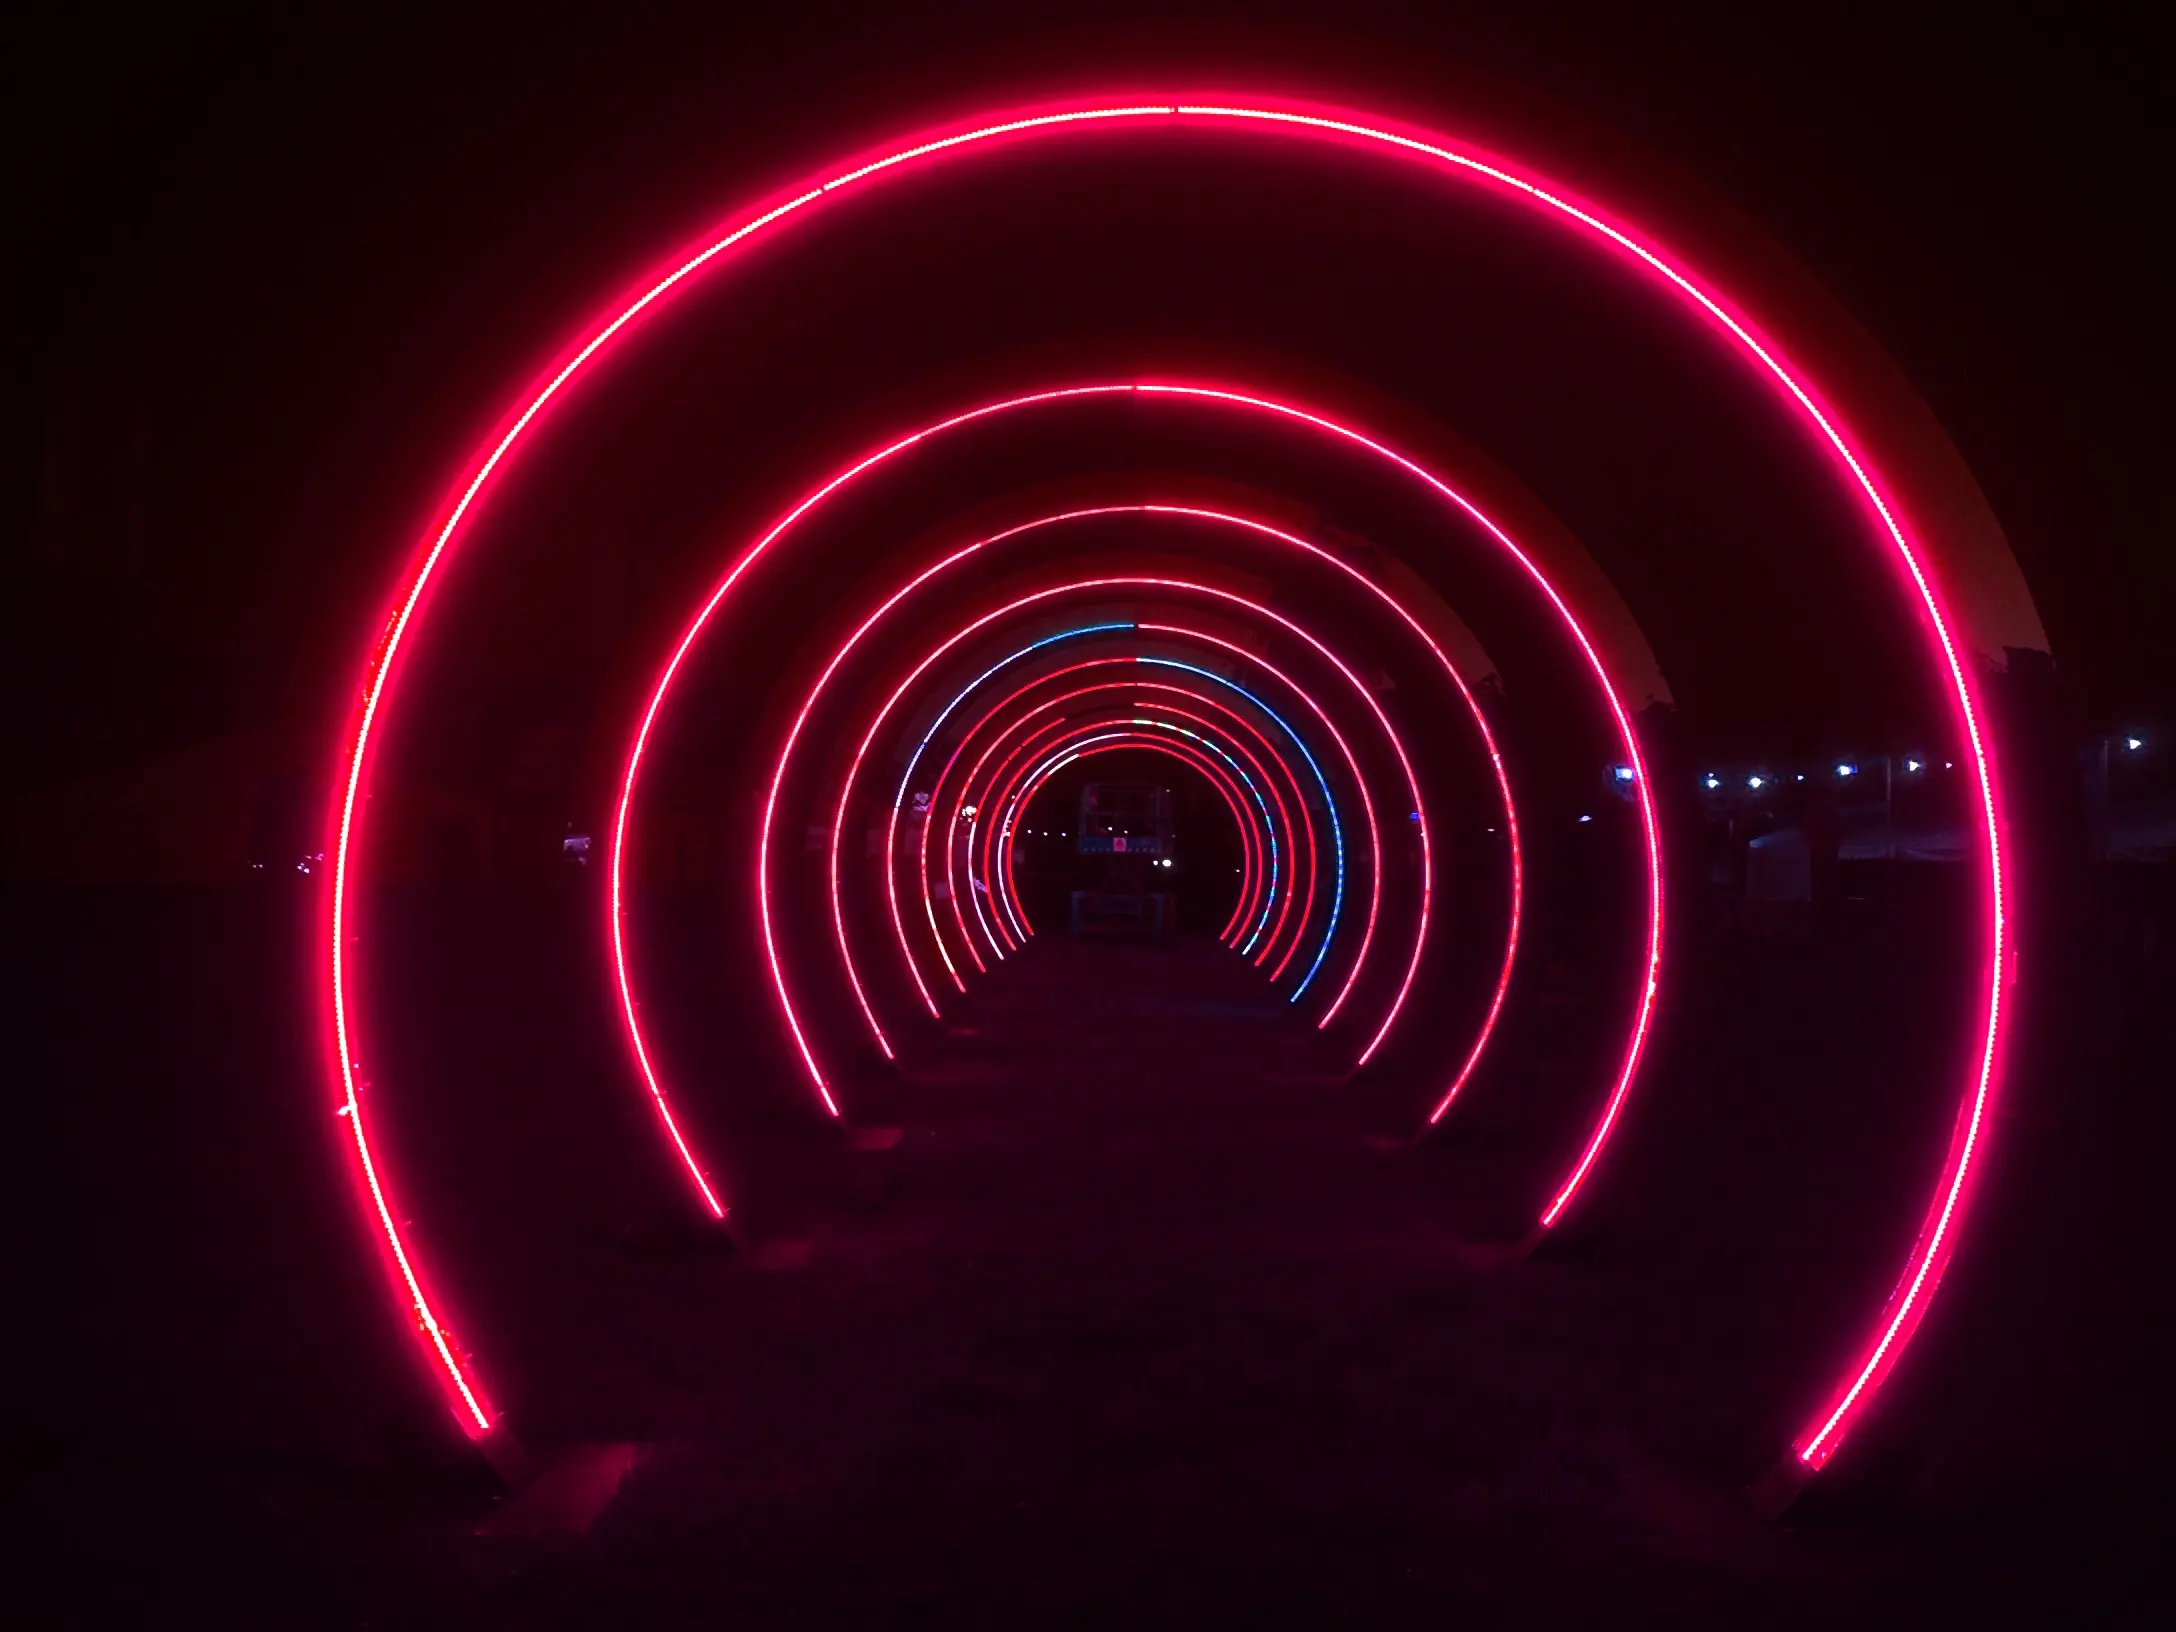 Özel açık zaman tüneli müzik festivali akıllı olay dekoratif işıklar RGB LED akıllı yuvarlak kemer peyzaj ışıkları